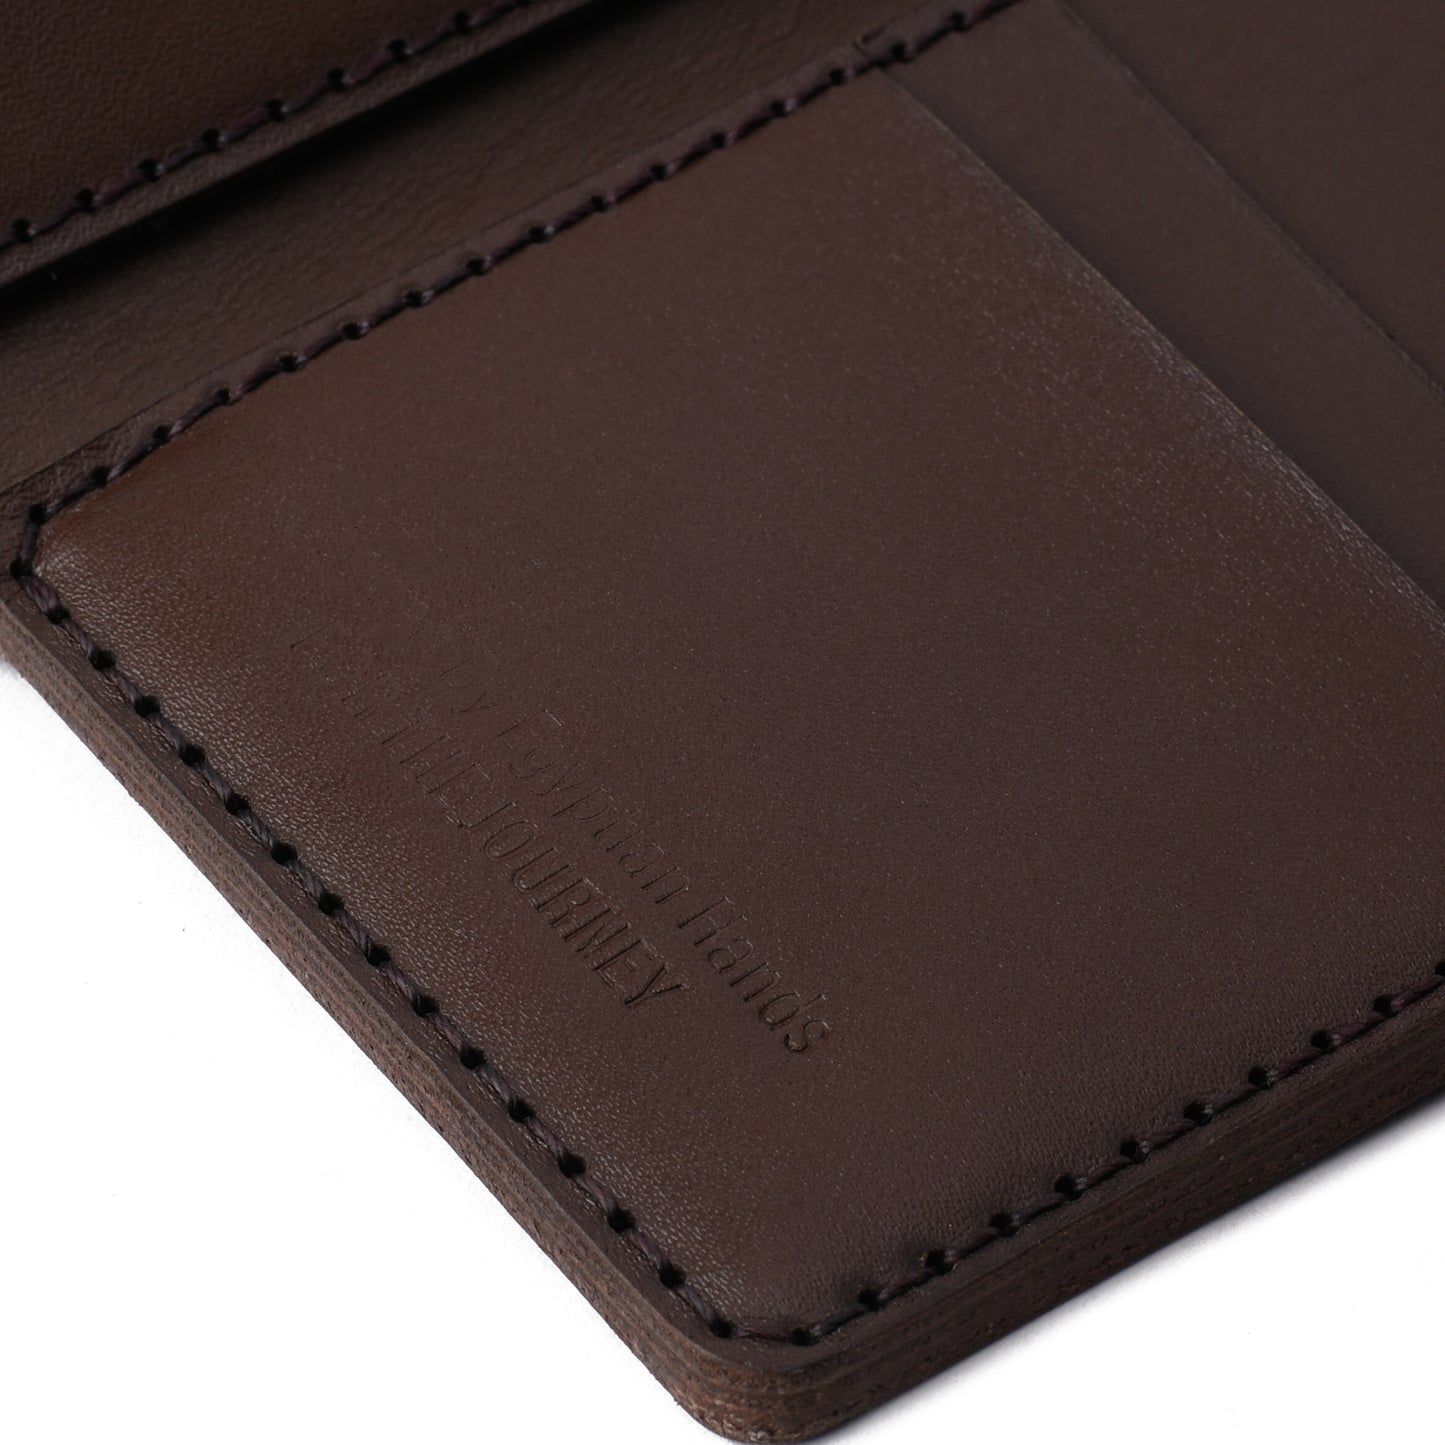 Slim brown leather wallet